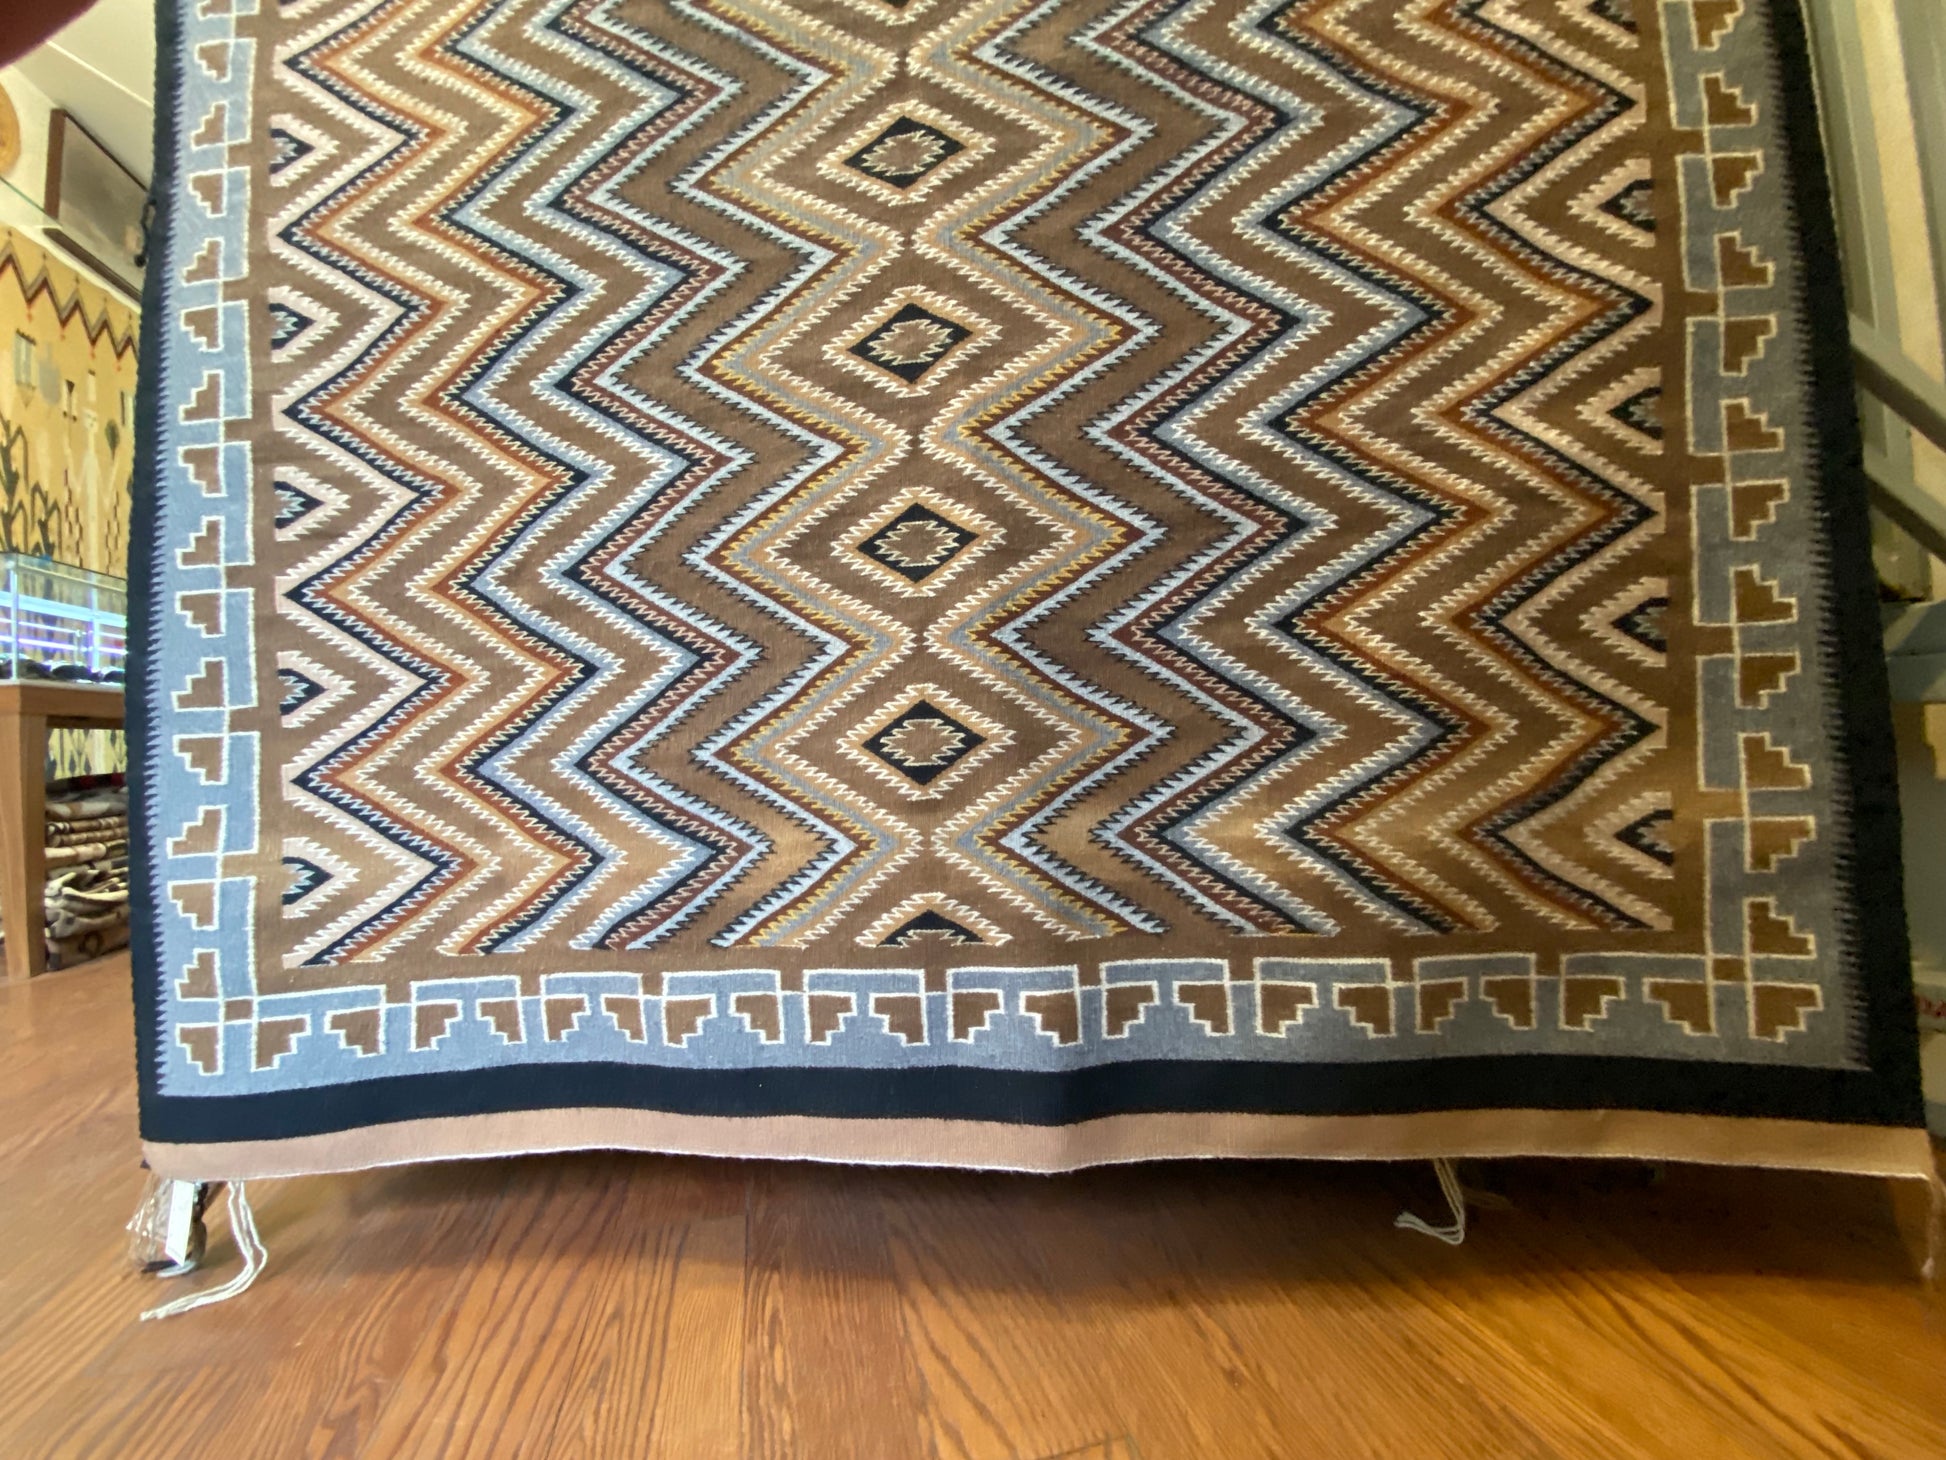 Teec Nos Pos Navajo Weaving, authentic navajo rug for sale, Telluride gallery, telluride decor